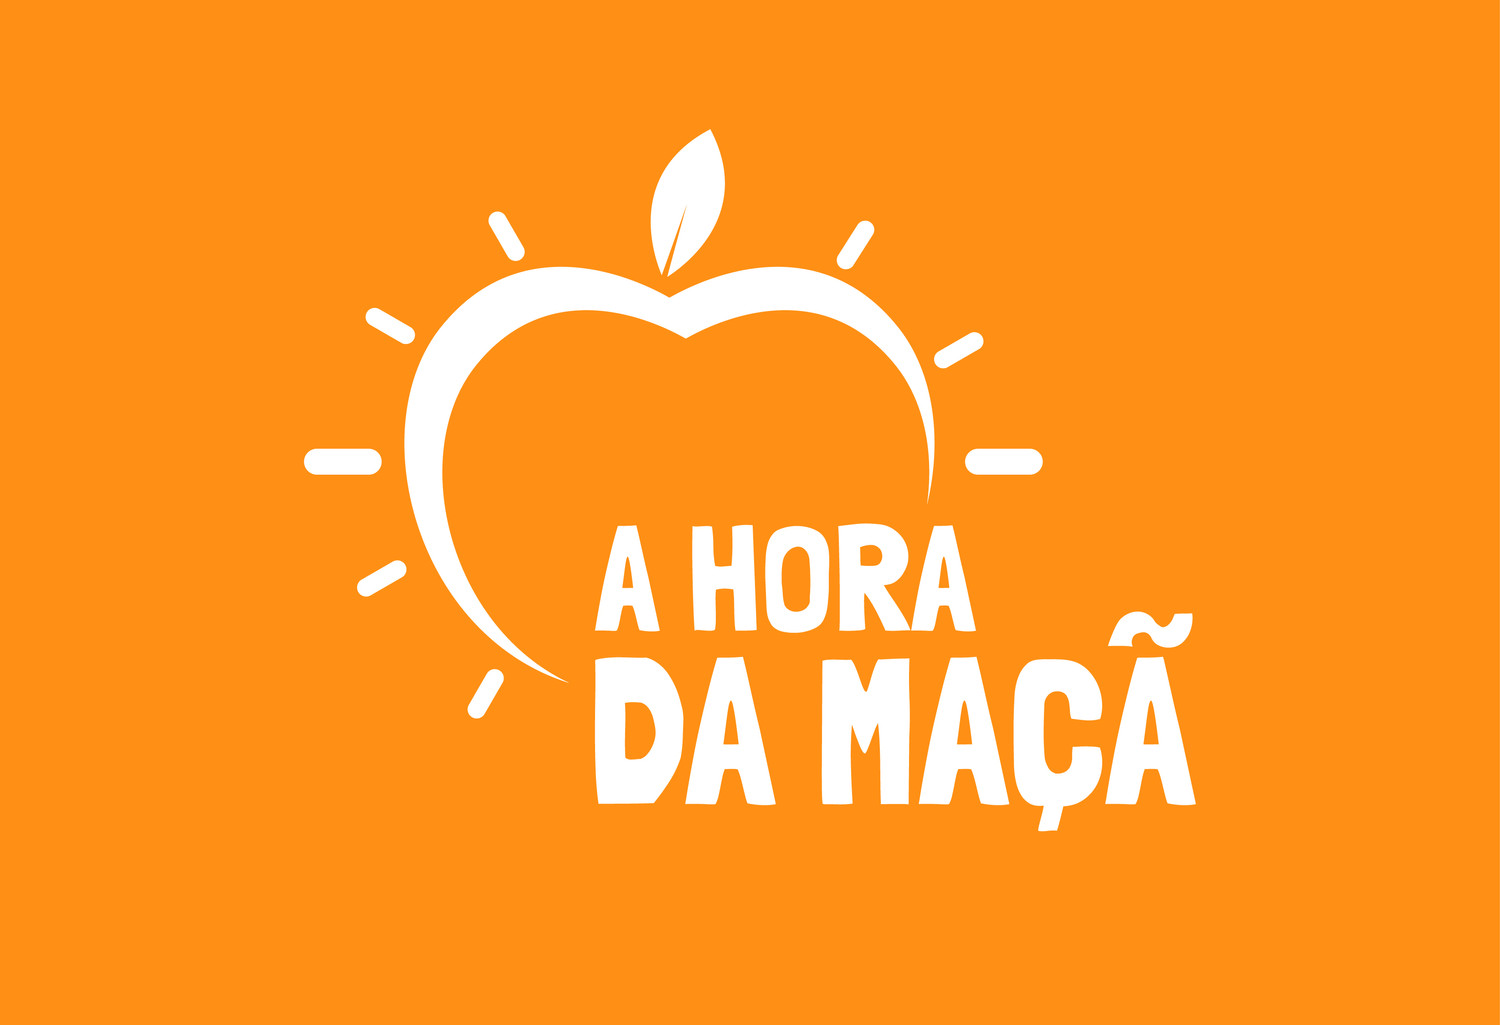 Le podcast "A Hora da Maçã" a une nouvelle image !  blog post